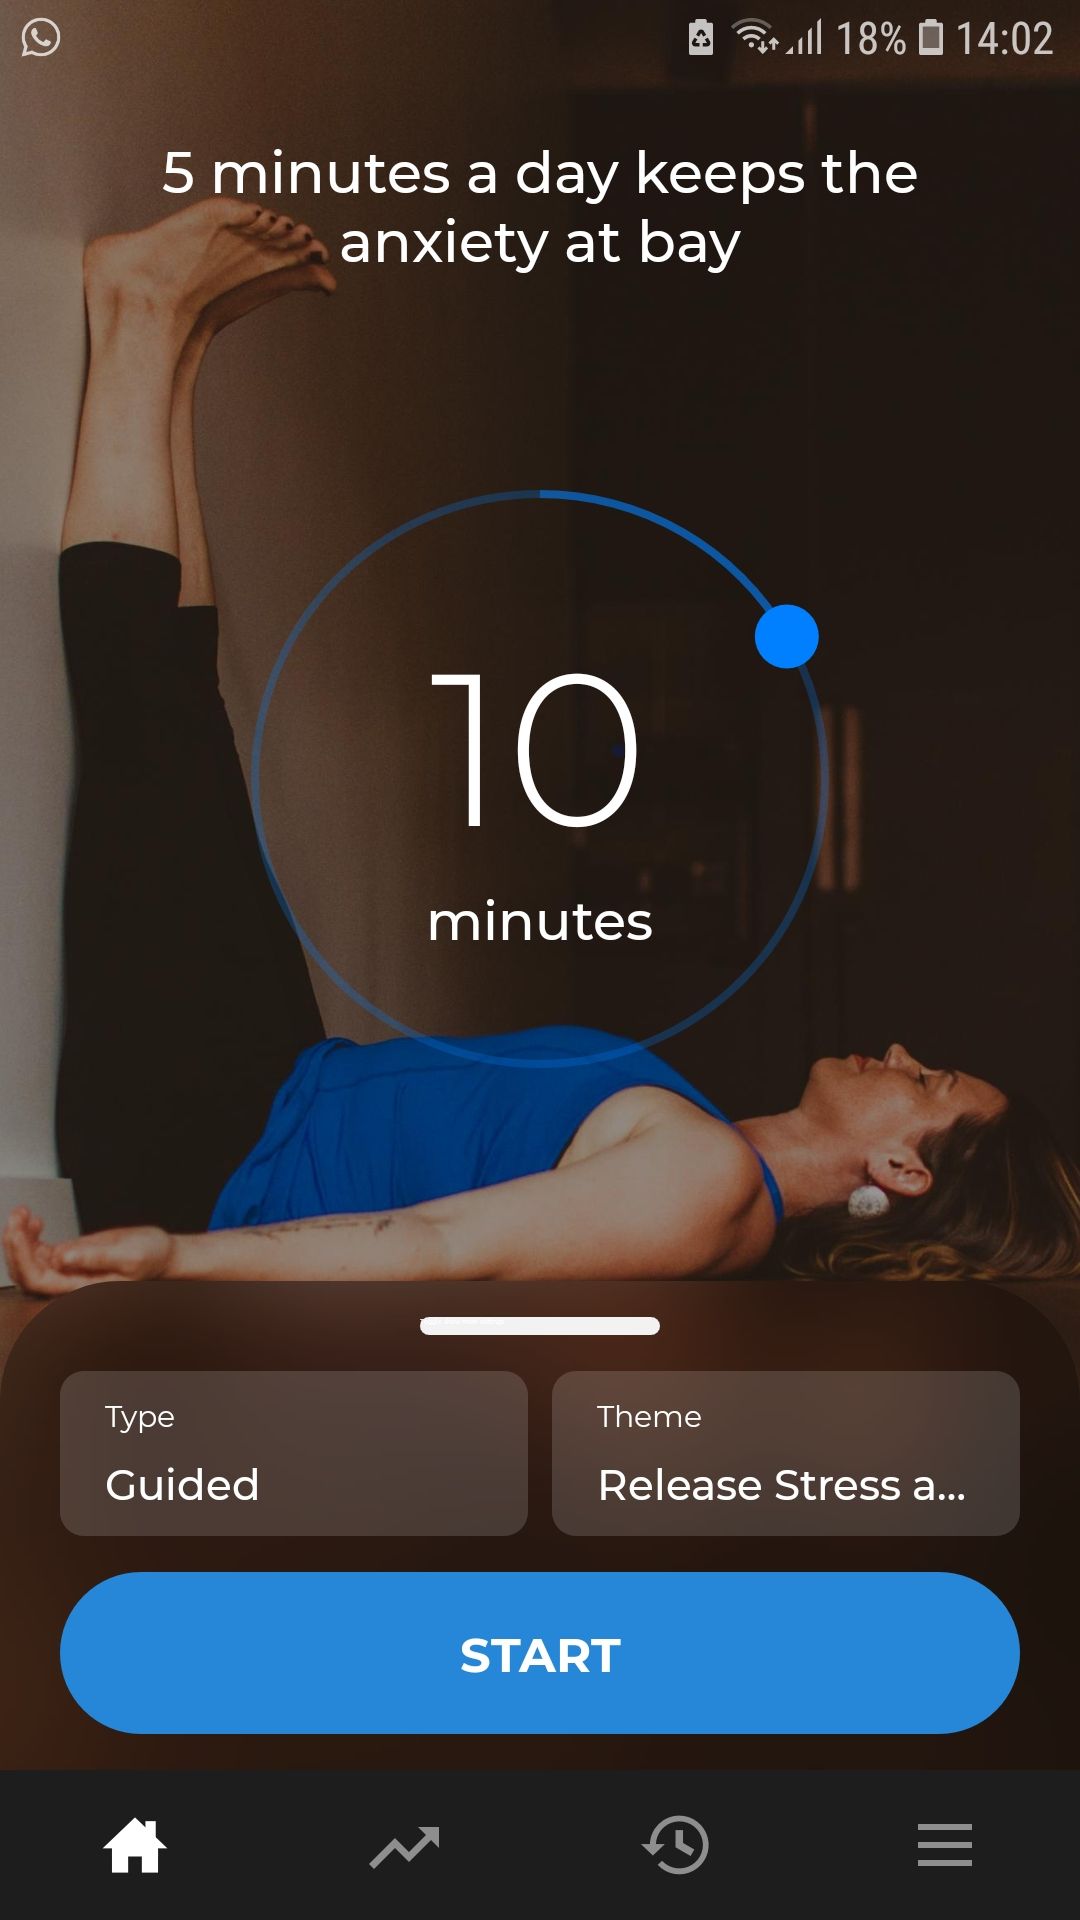 Down Dog Meditation mobile workout app